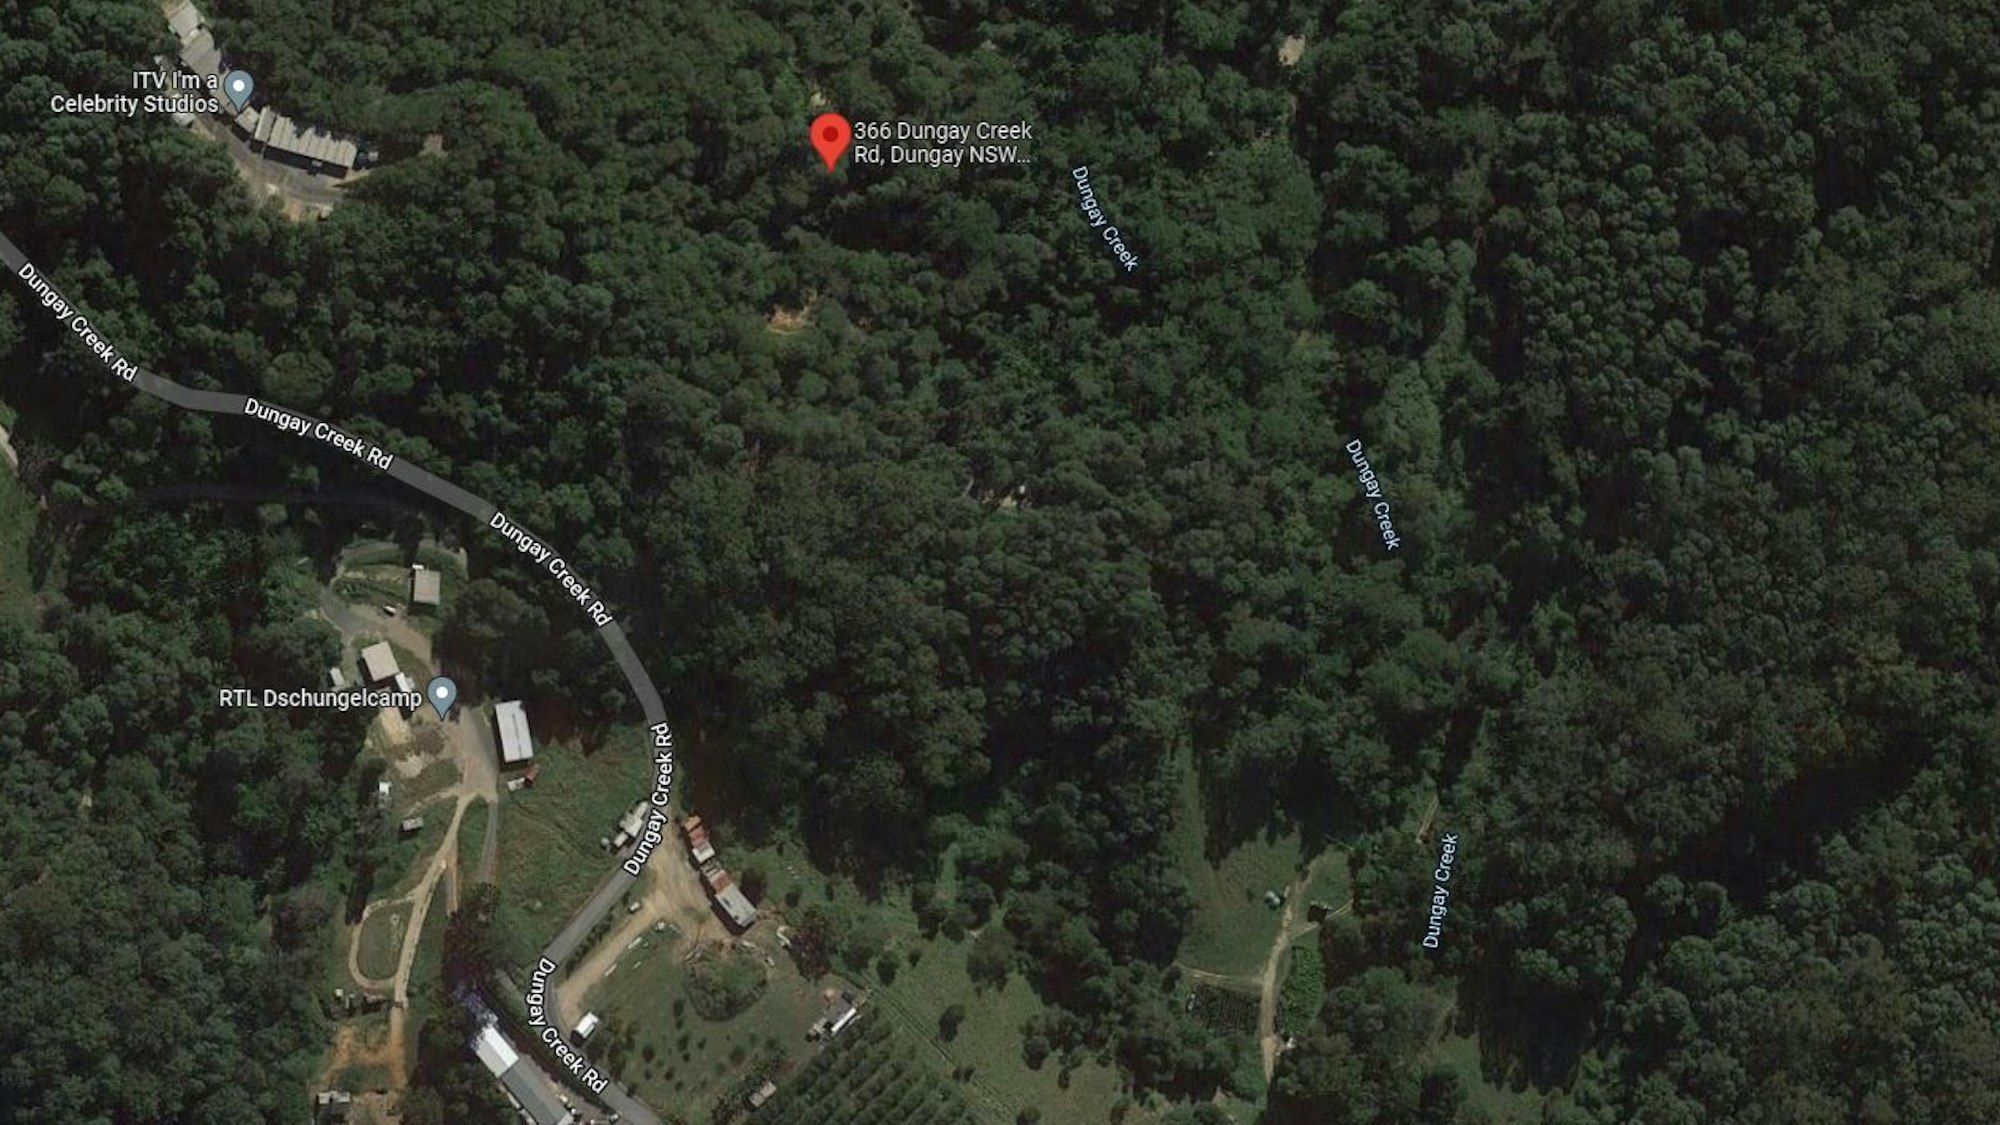 Das Dschungelcamp am Rande des Dschungels in Australien, hier zu sehen auf Google Maps.